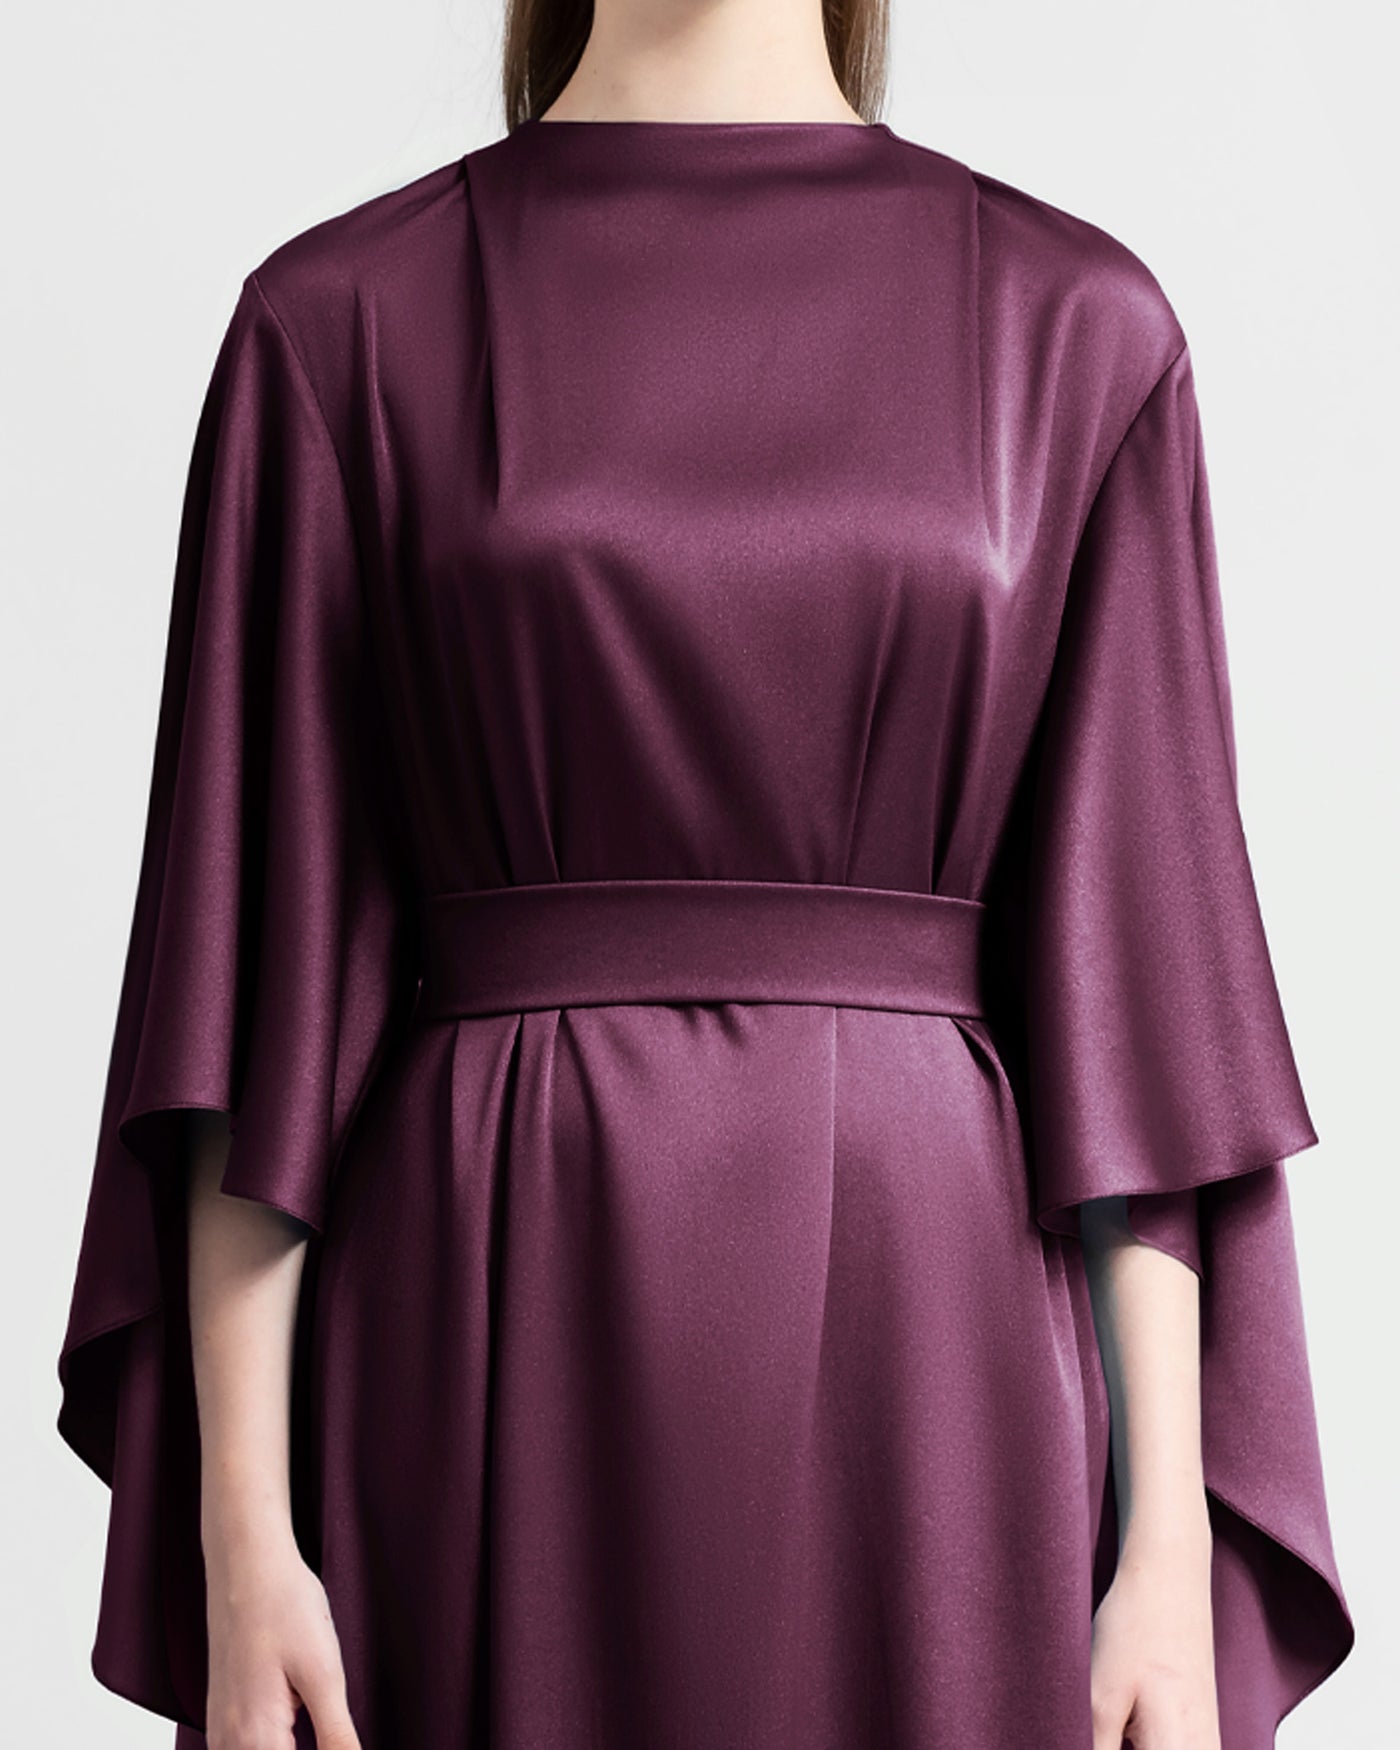 Burgundy Loose-Cut Bell Sleeves Dress